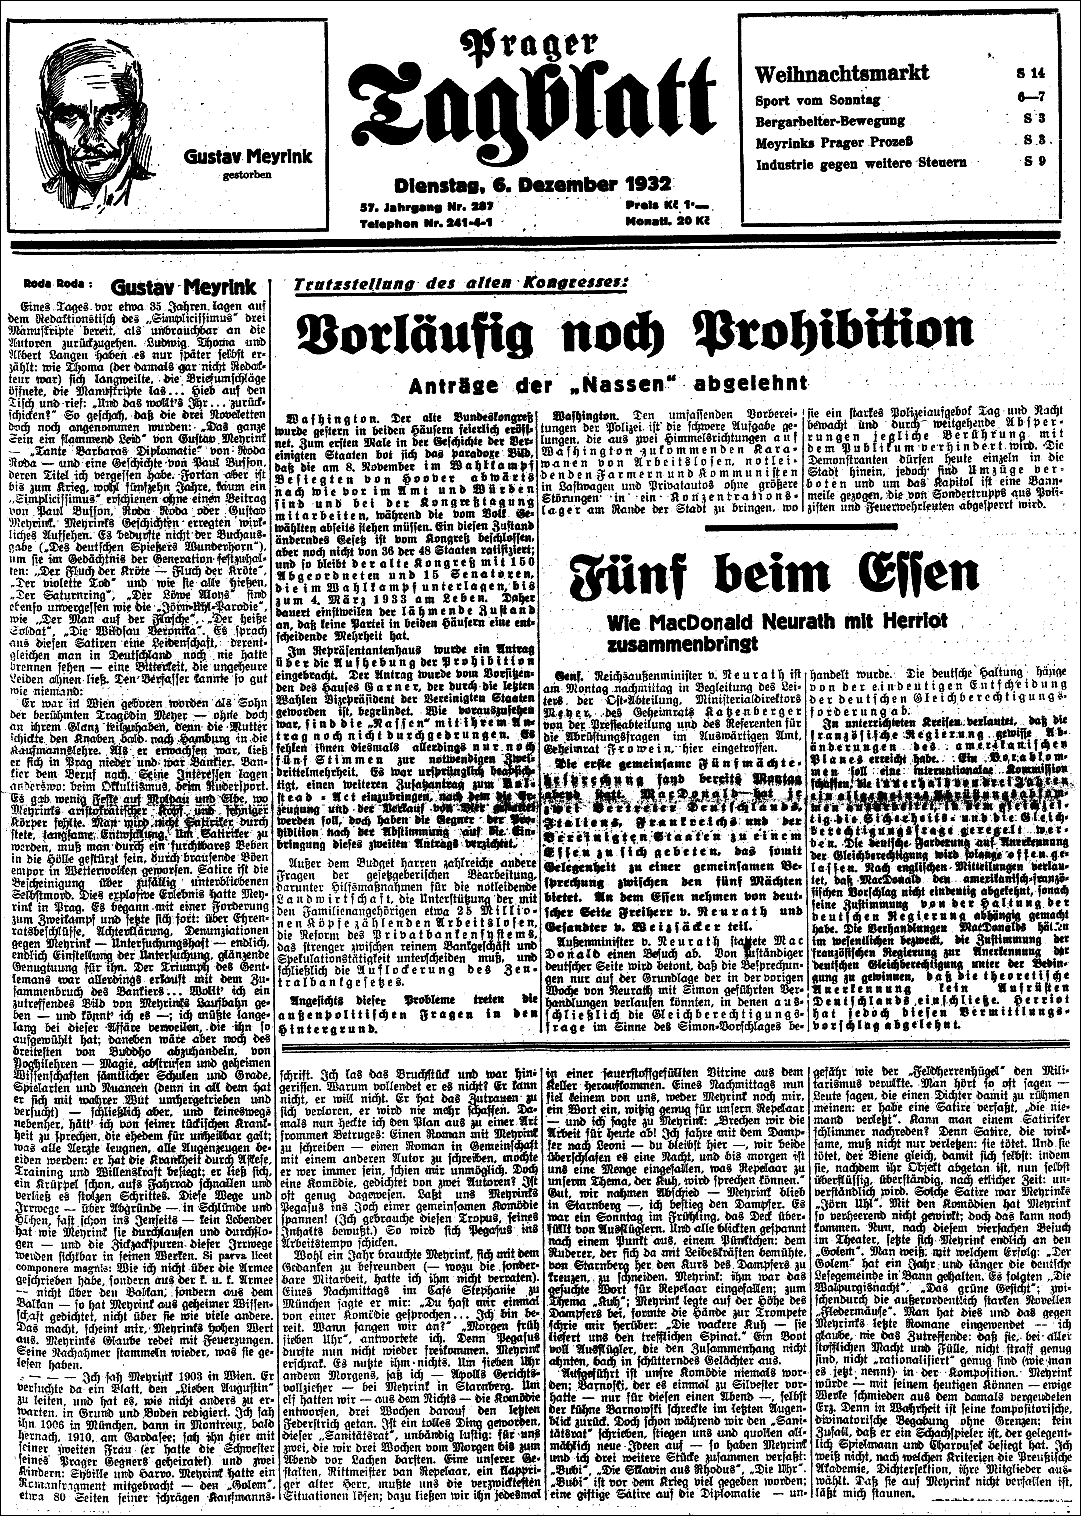 První strana listu Prager Tagblatt ze 6. prosince roku 1932 se zprávou o Meyrinkově úmrtí a nekrologem, který napsal Roda Roda (vl. jm. Alexander/Sándor Friedrich
Ladislaus Rosenfeld /1872-1945/)